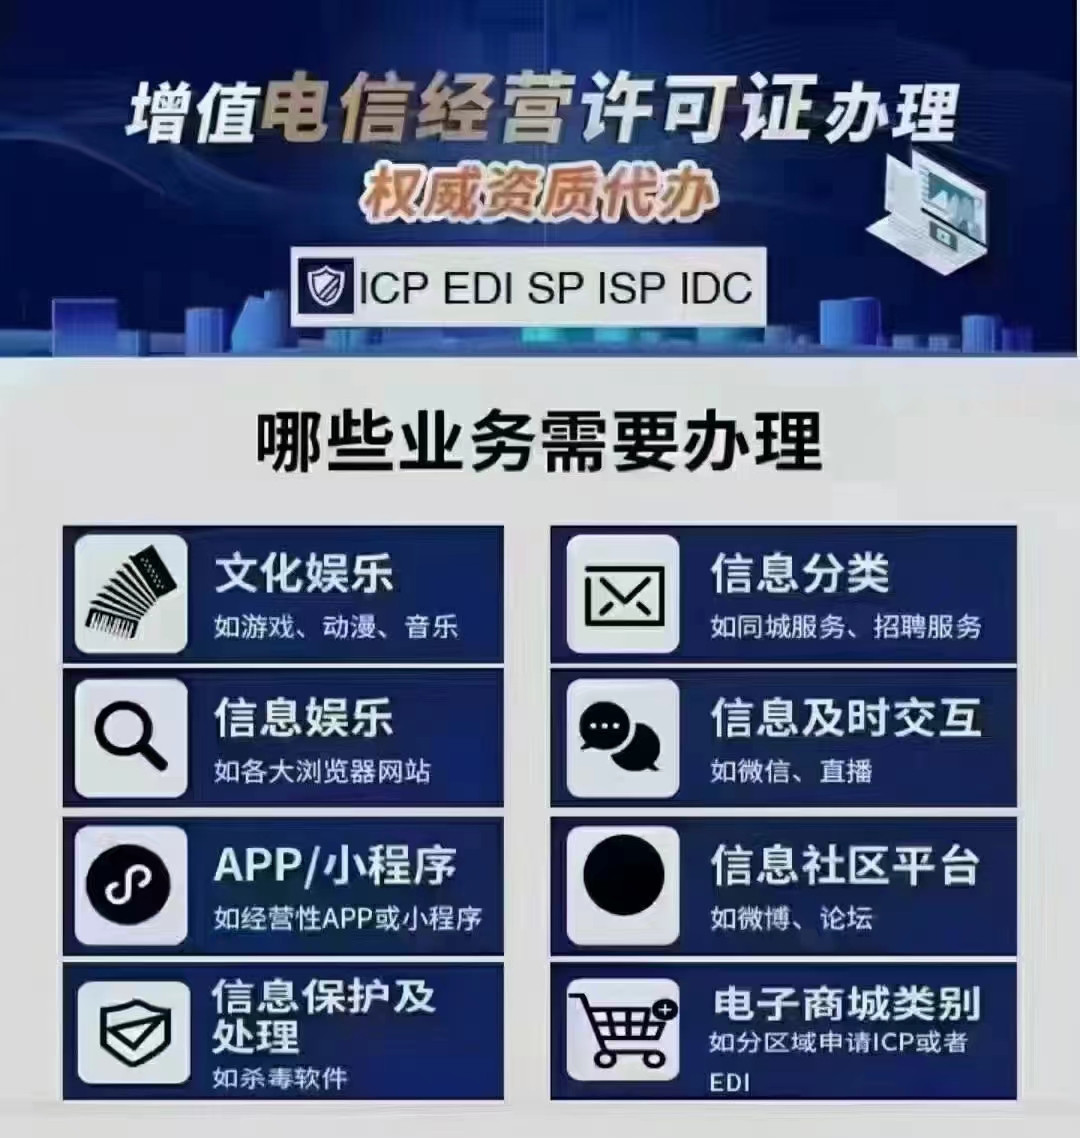 北京市ICP申请经营许可证EDI增值电信业务范围